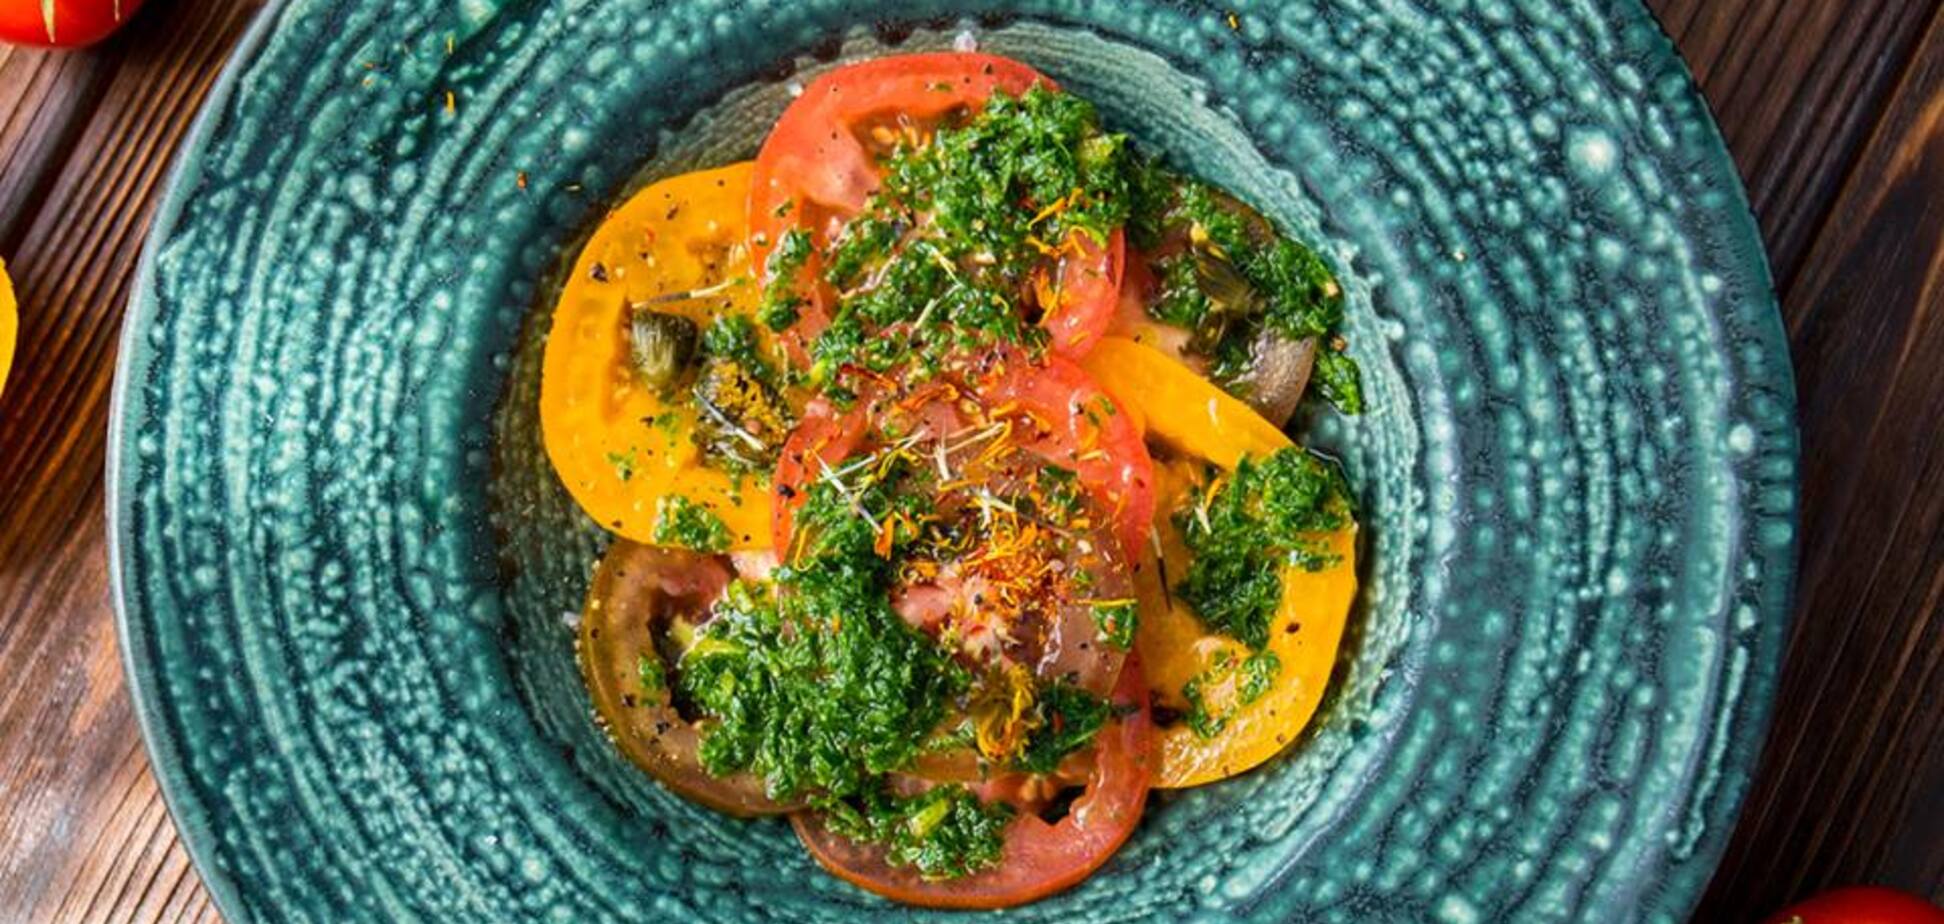  'Удивительный вкус': известный кулинар поделился рецептом салата 